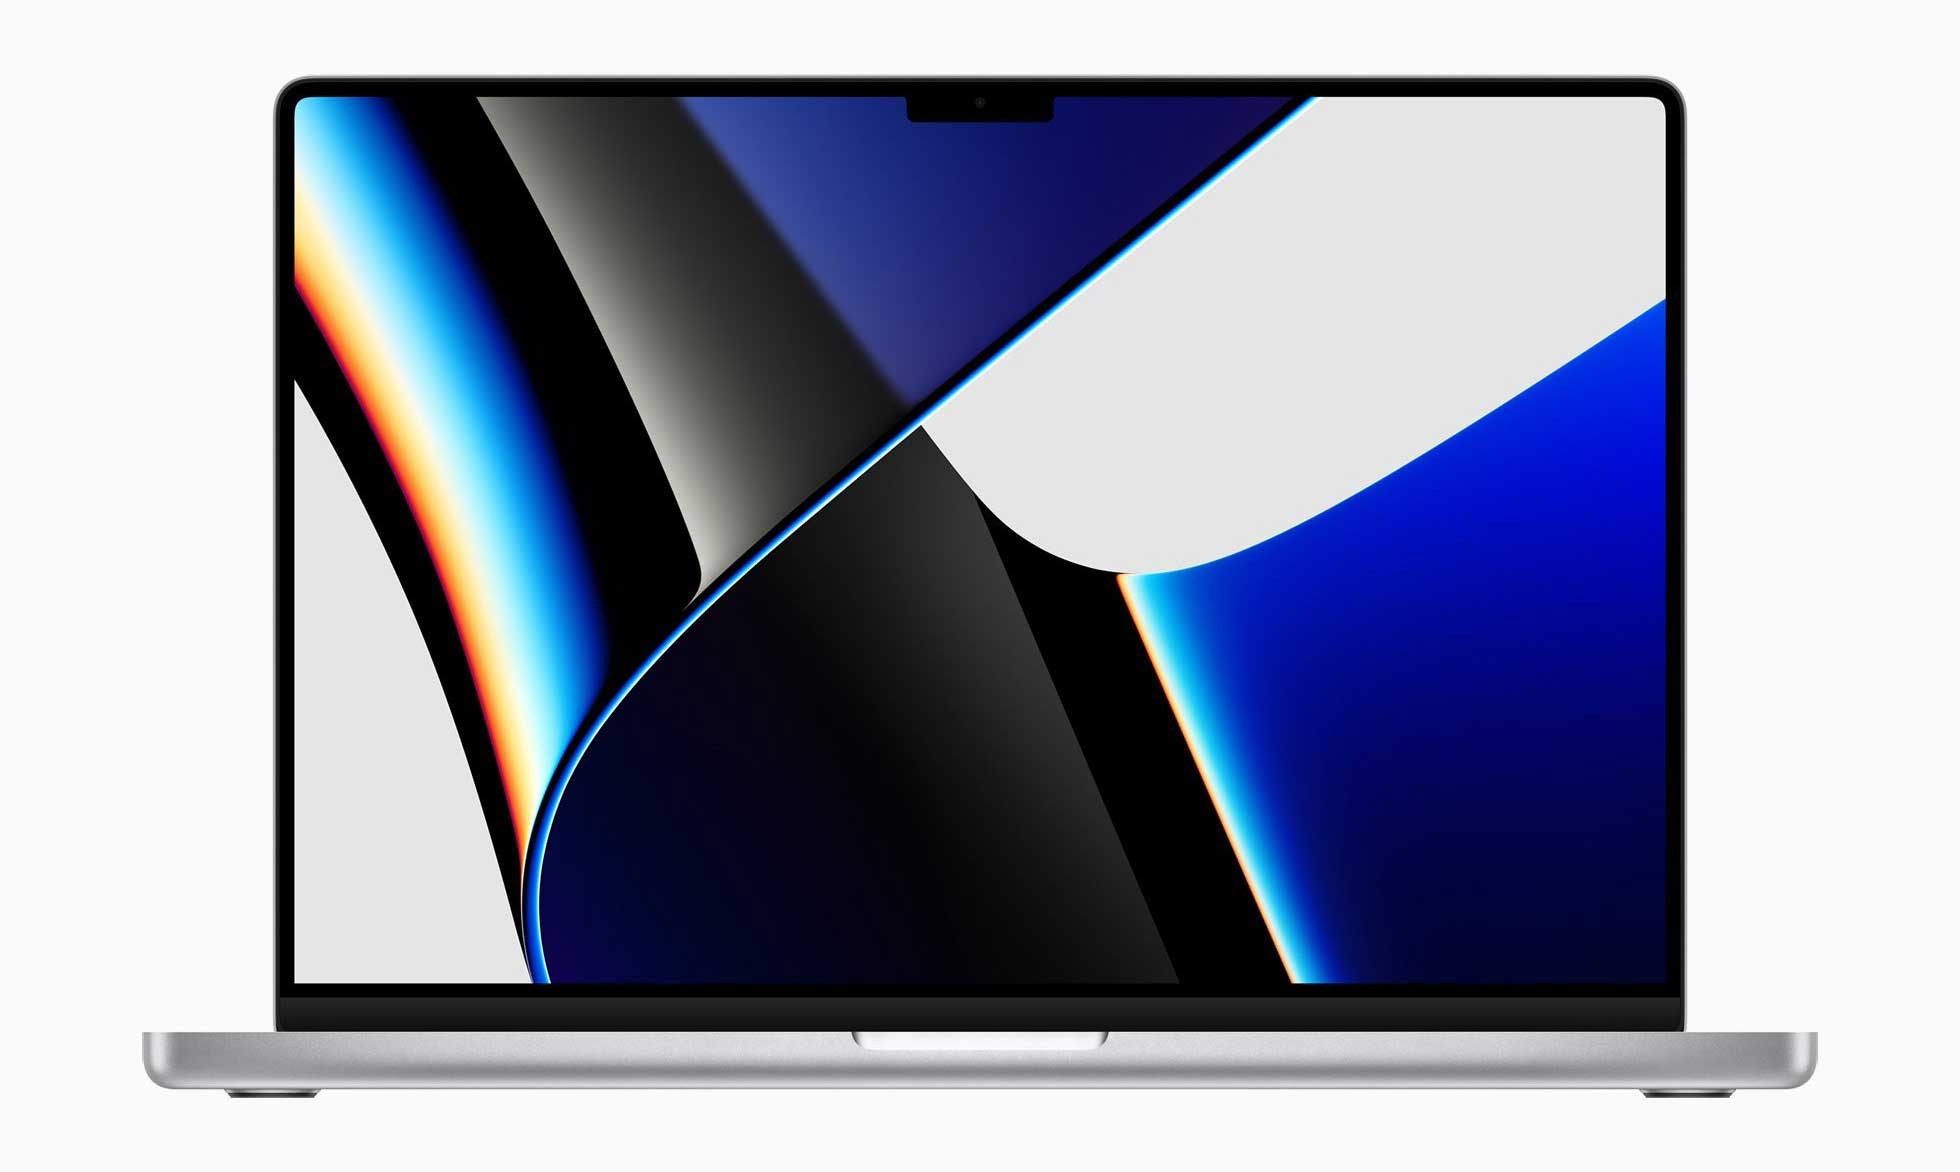 Le nouveau MacBook Pro 14 pouces avec puce M1 Pro, écran XDR Pro et caméra FaceTime 1080p est arrivé.